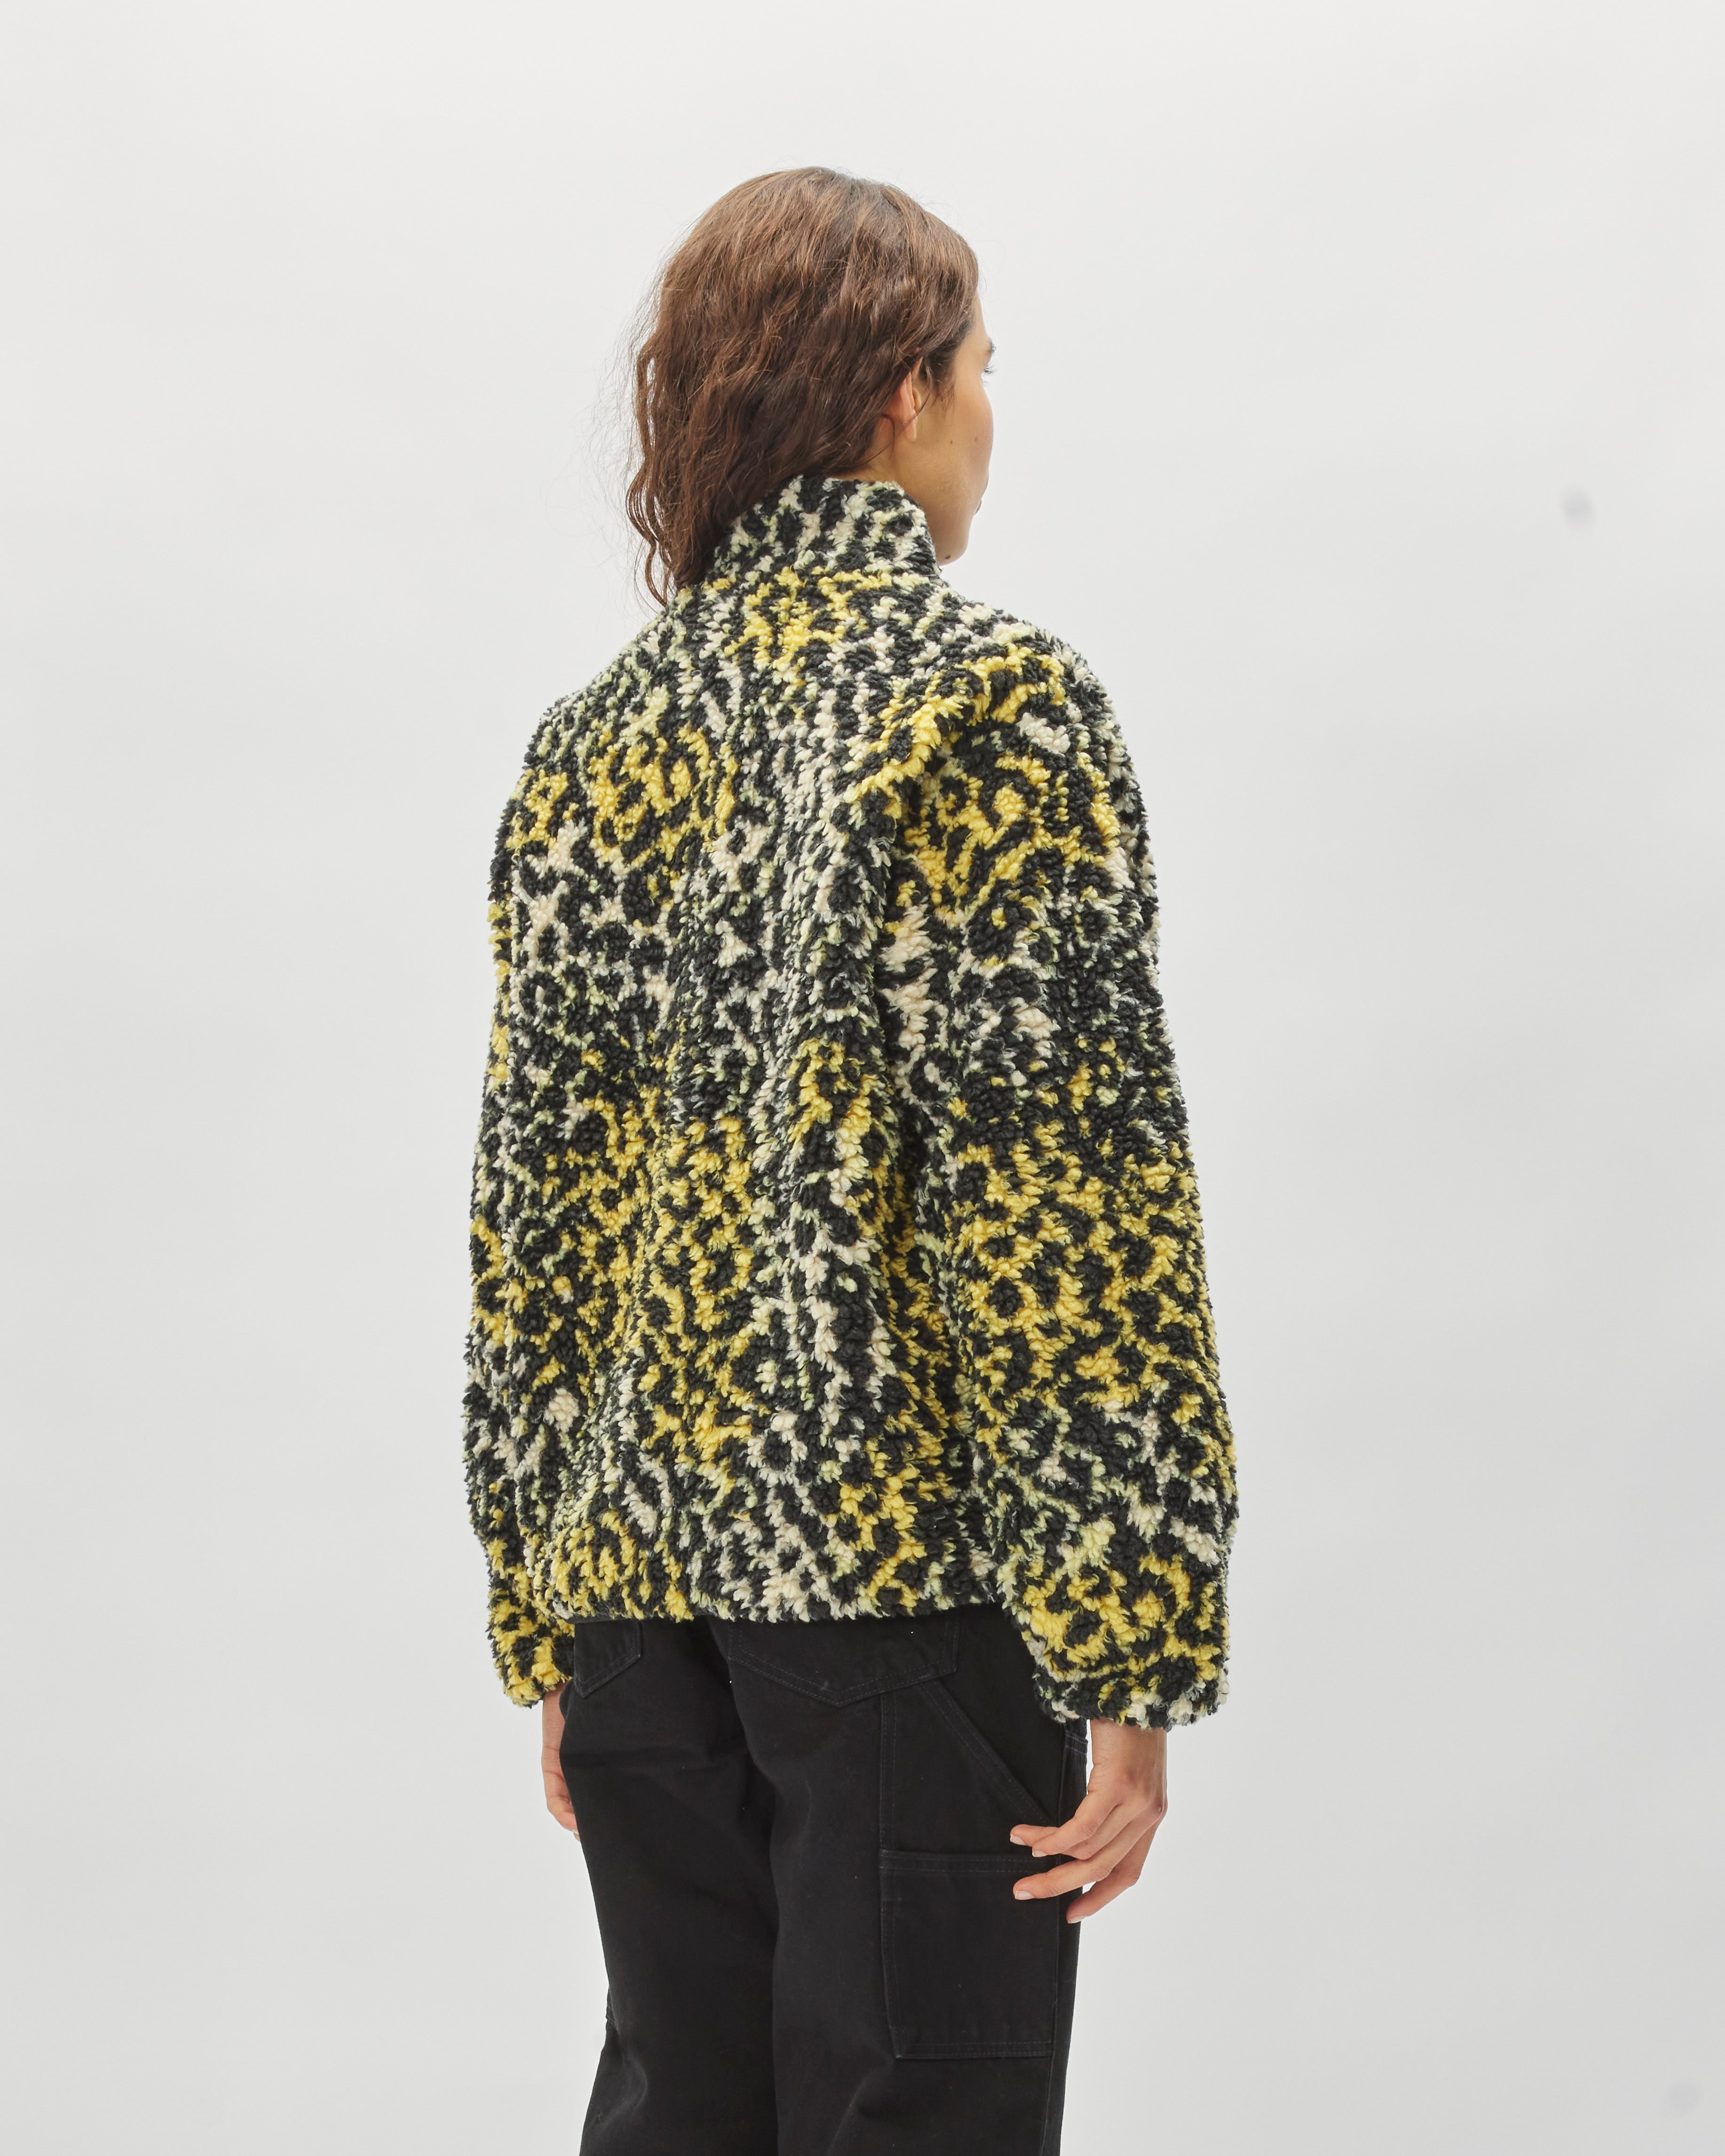 Stüssy Sherpa Reversible Jacket yellow leopard 118529-3157